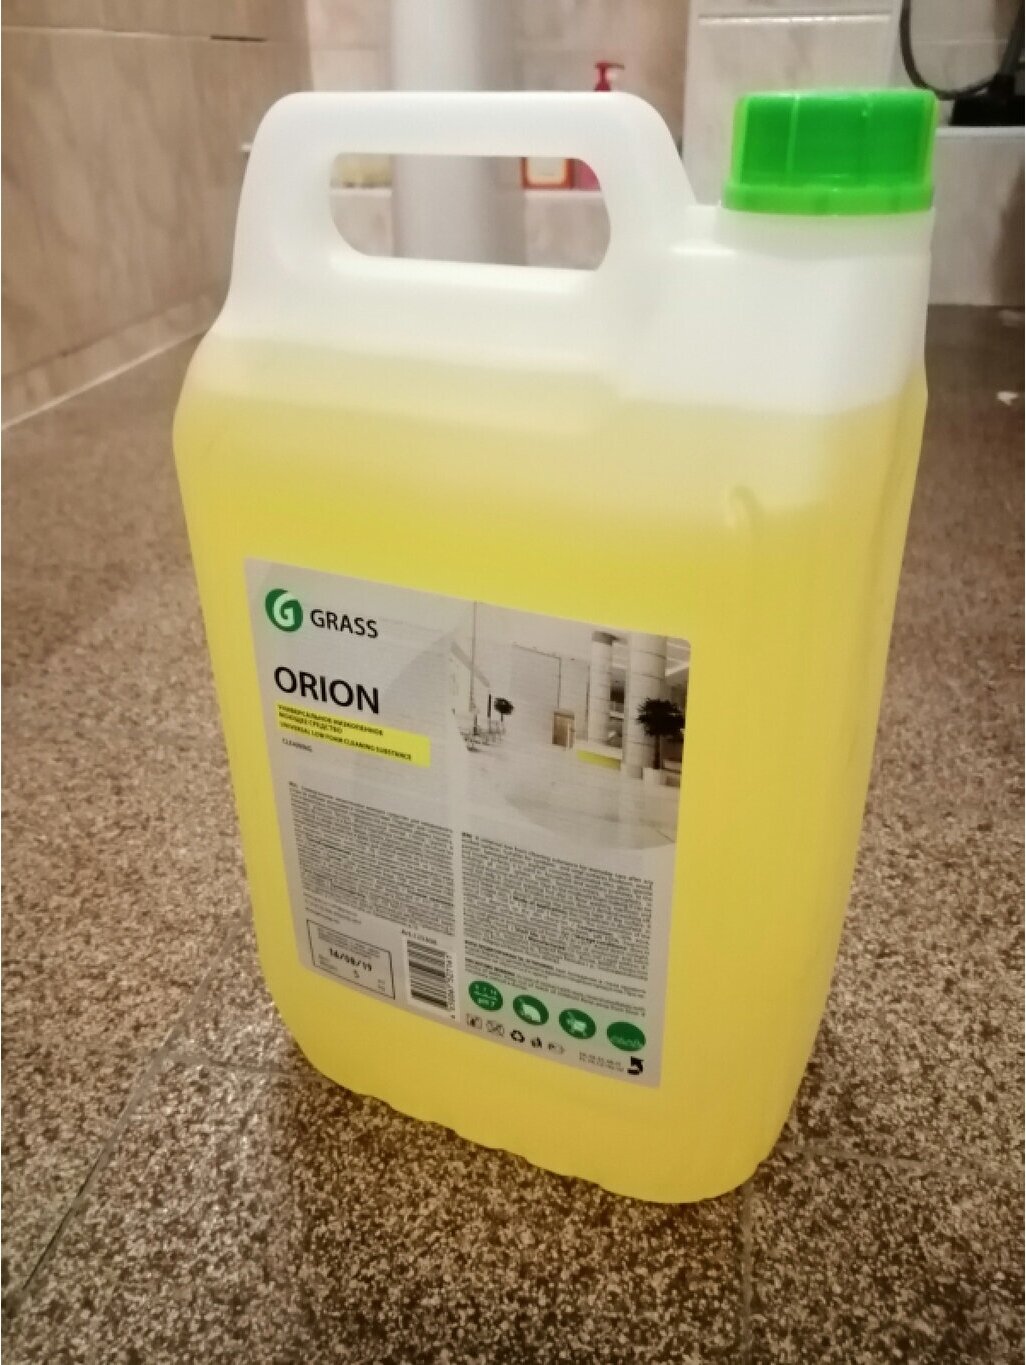 Grass Универсальное моющее средство Orion